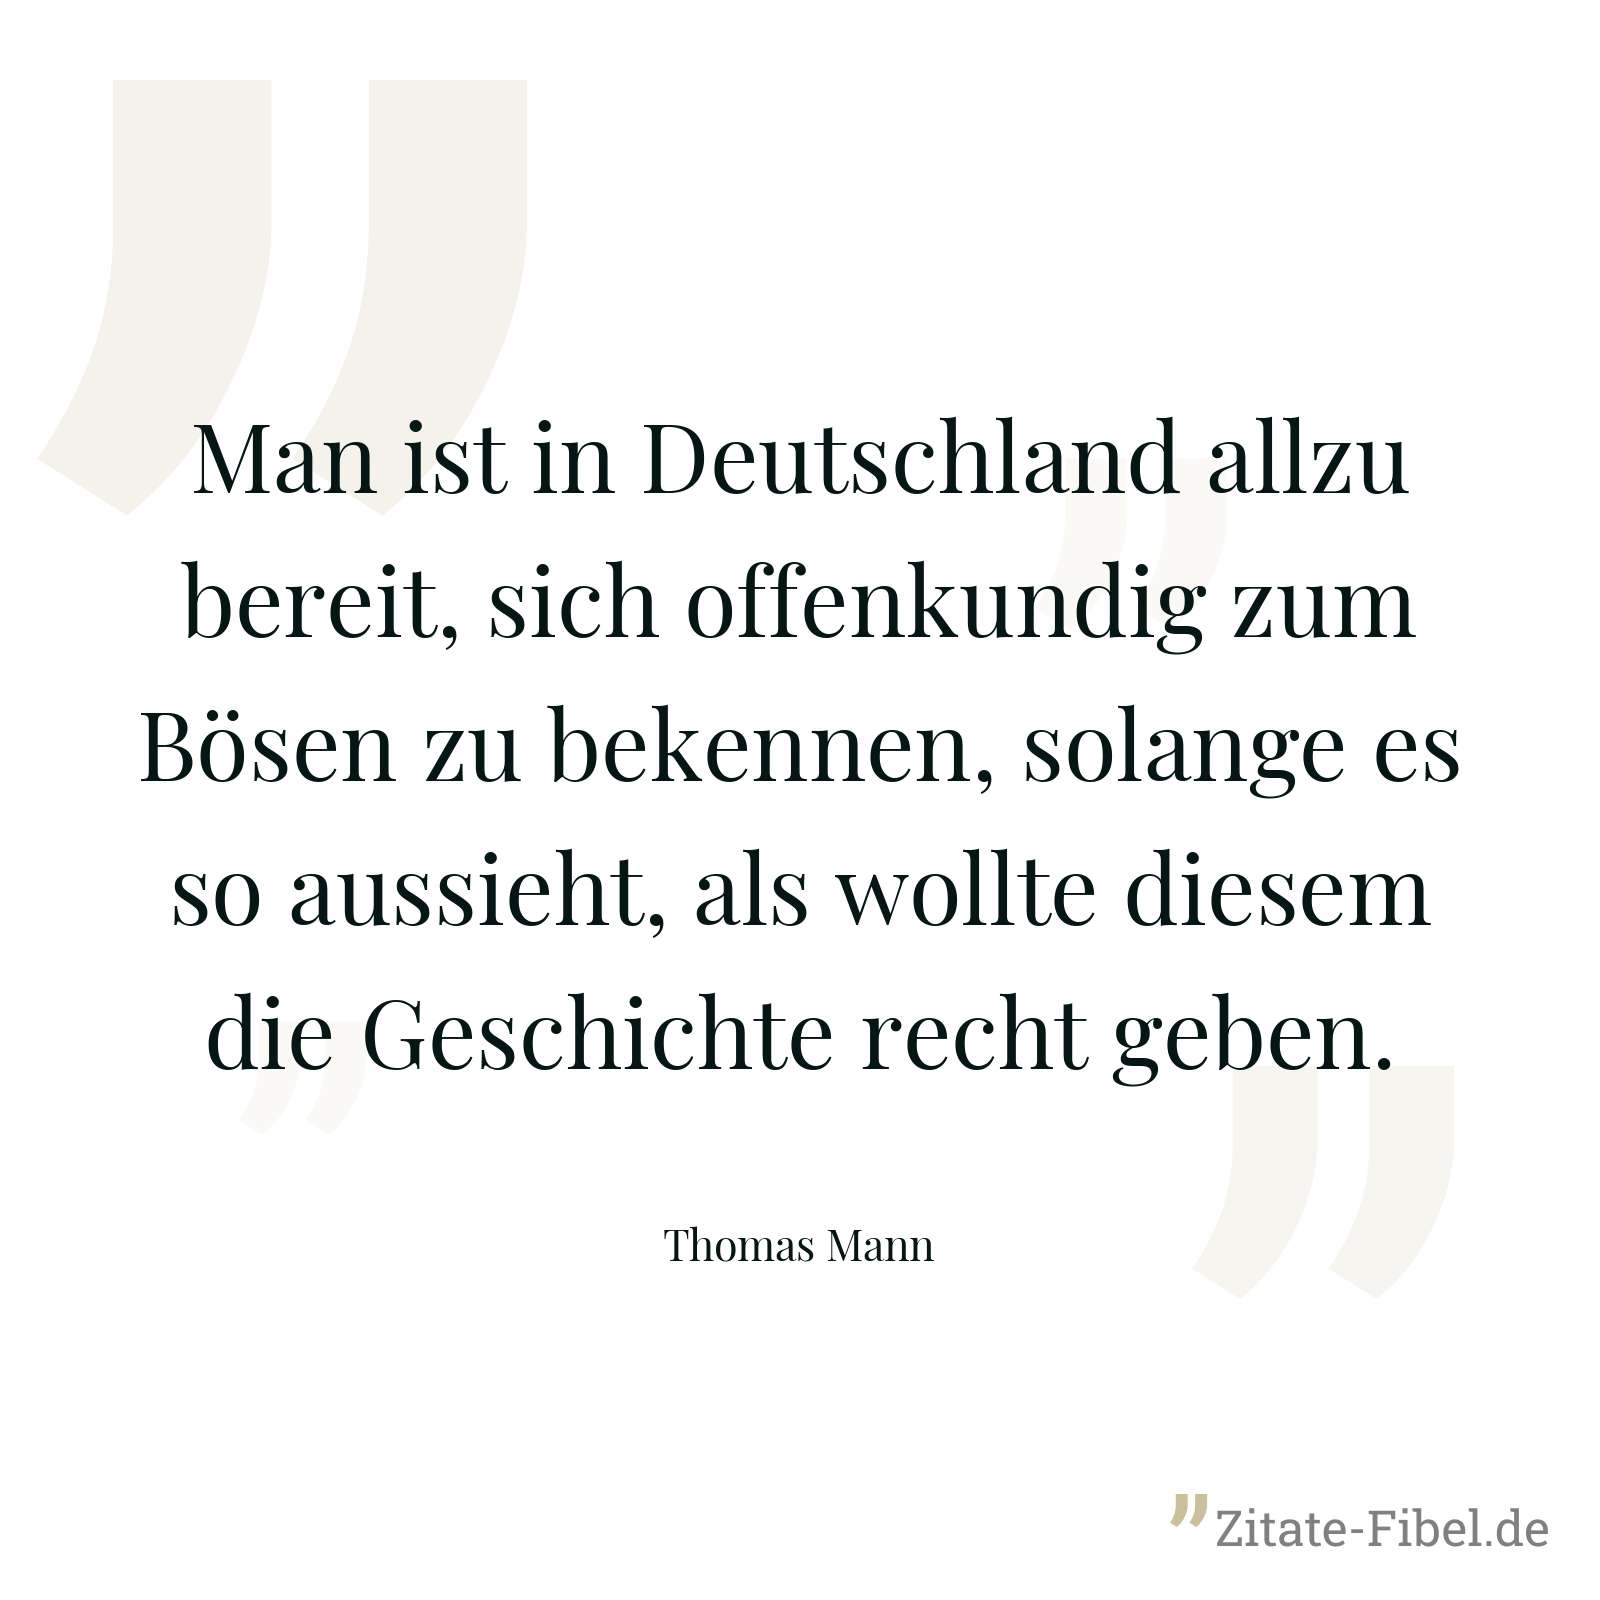 Man ist in Deutschland allzu bereit, sich offenkundig zum Bösen zu bekennen, solange es so aussieht, als wollte diesem die Geschichte recht geben. - Thomas Mann